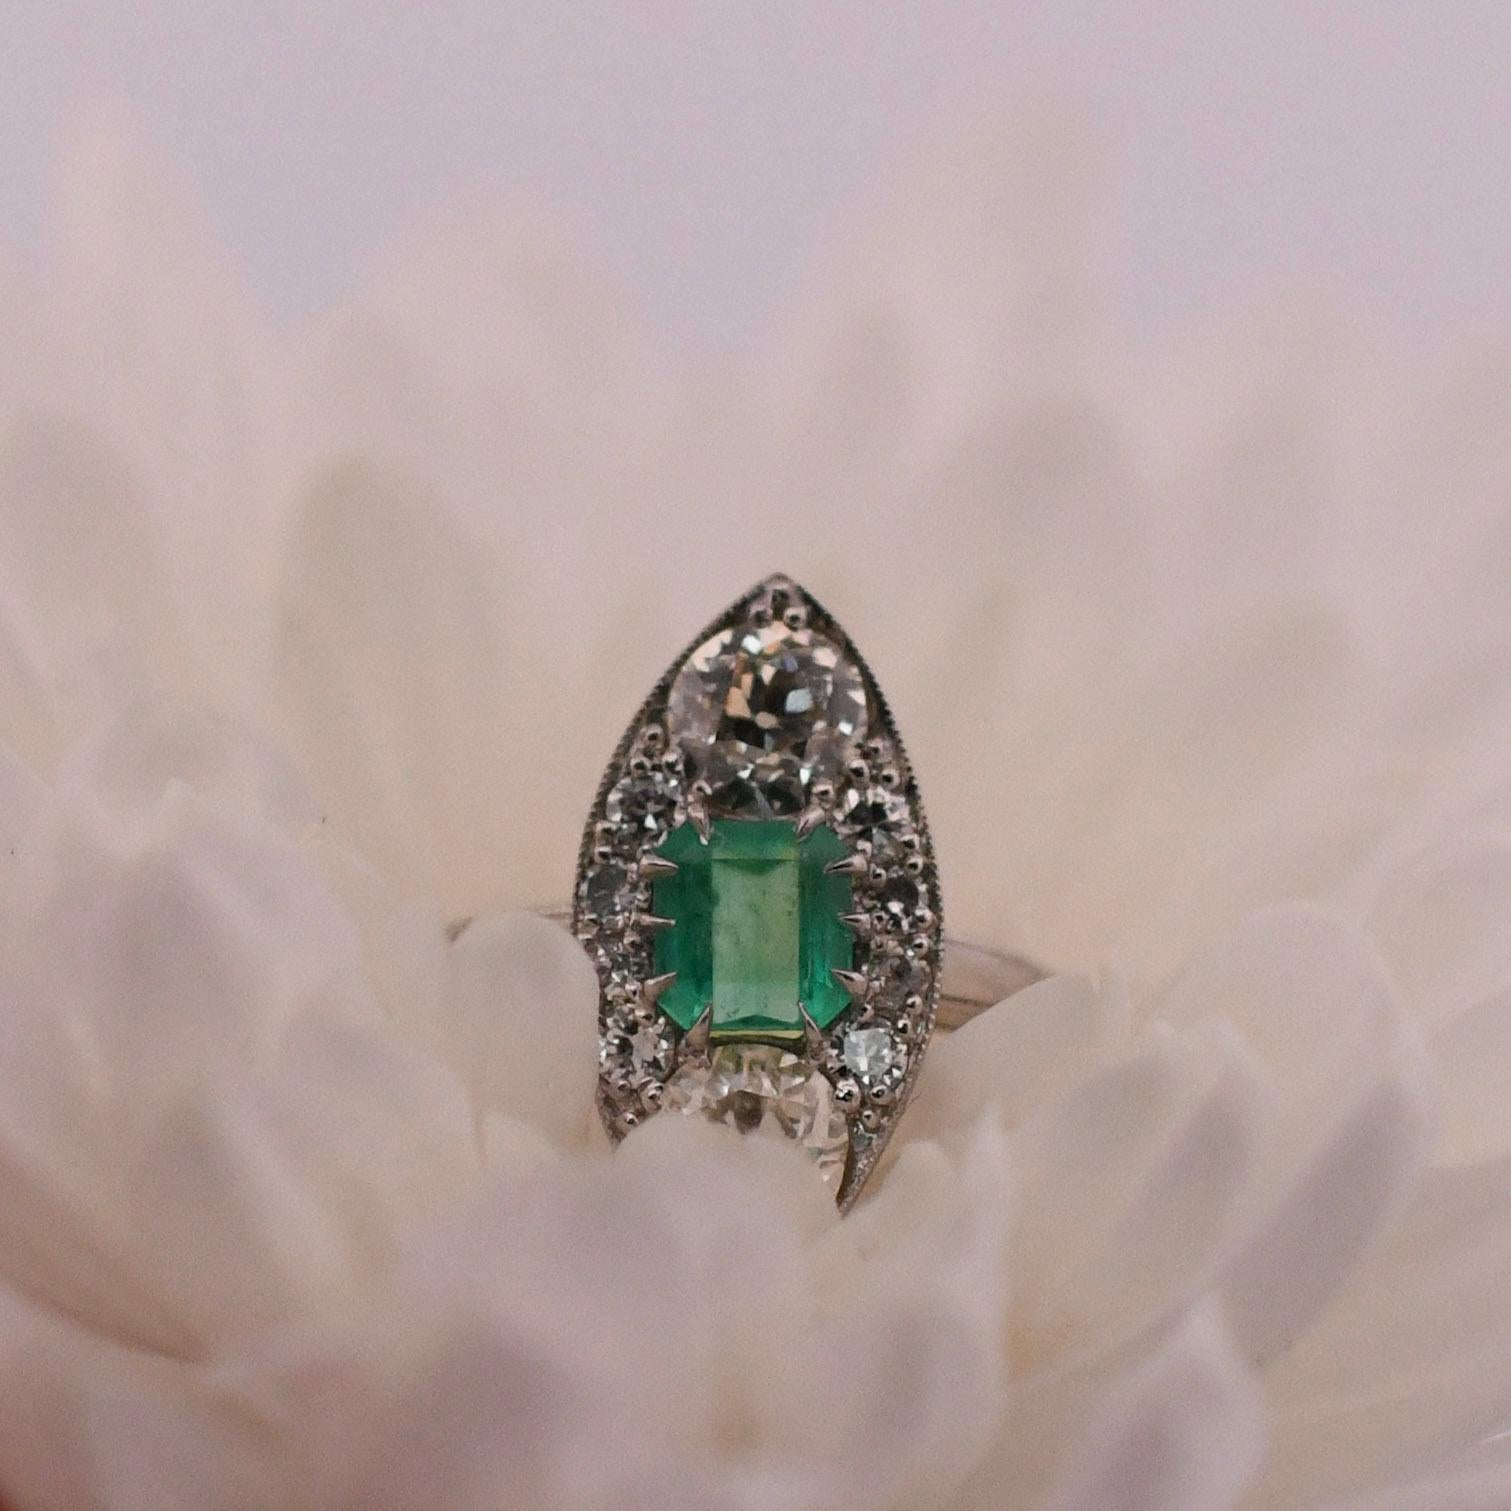 Versetzen Sie sich mit diesem exquisiten 3-Stein-Navette-Ring in die glamouröse Art-Déco-Ära. Zwei funkelnde Diamanten flankieren einen fesselnden kolumbianischen Smaragd in der Mitte. Das Design des Rings verkörpert die klaren Linien, die